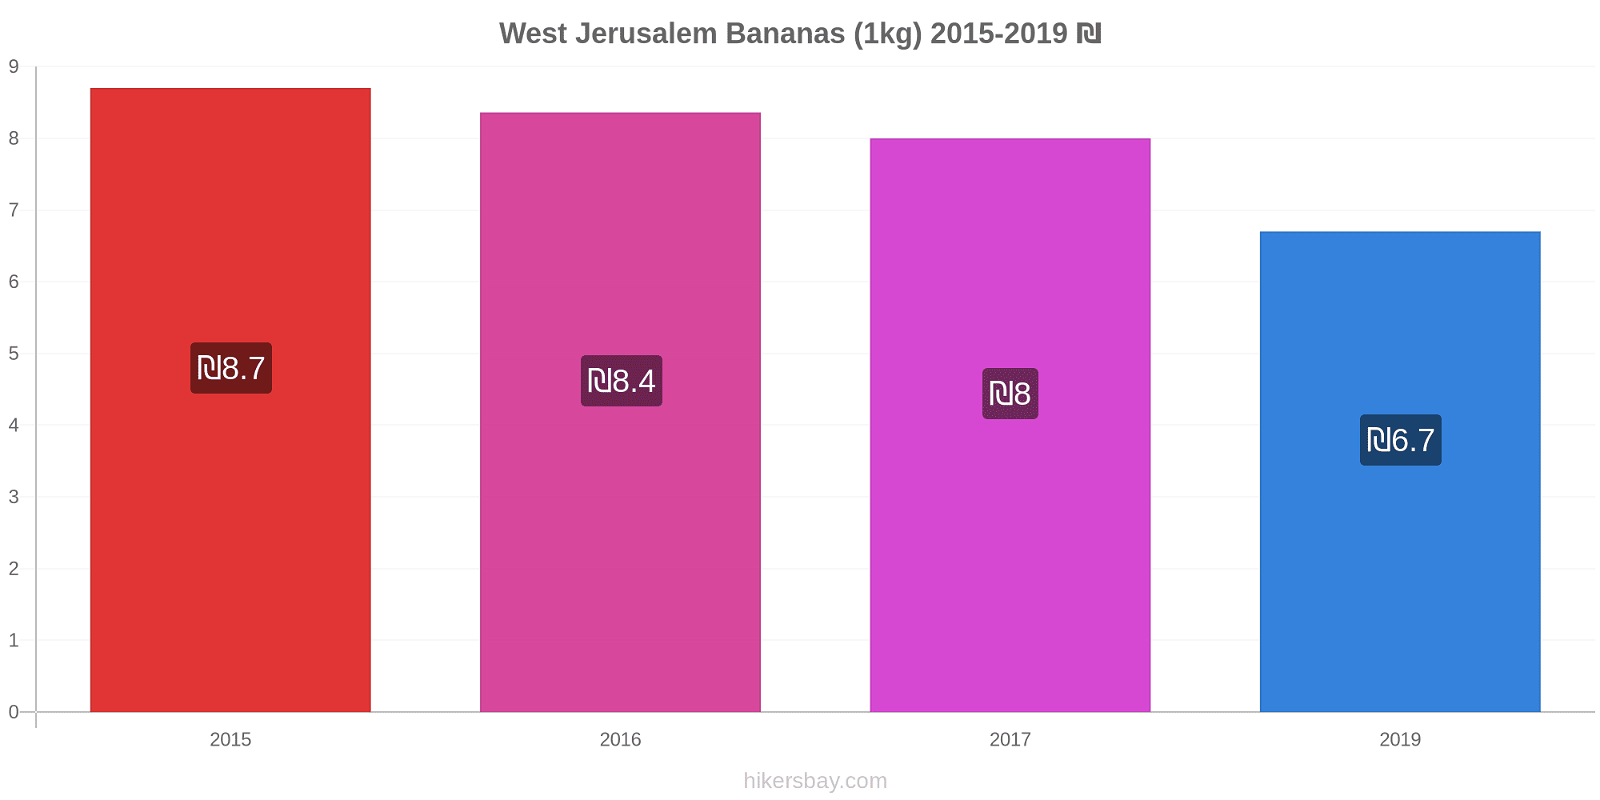 West Jerusalem price changes Bananas (1kg) hikersbay.com